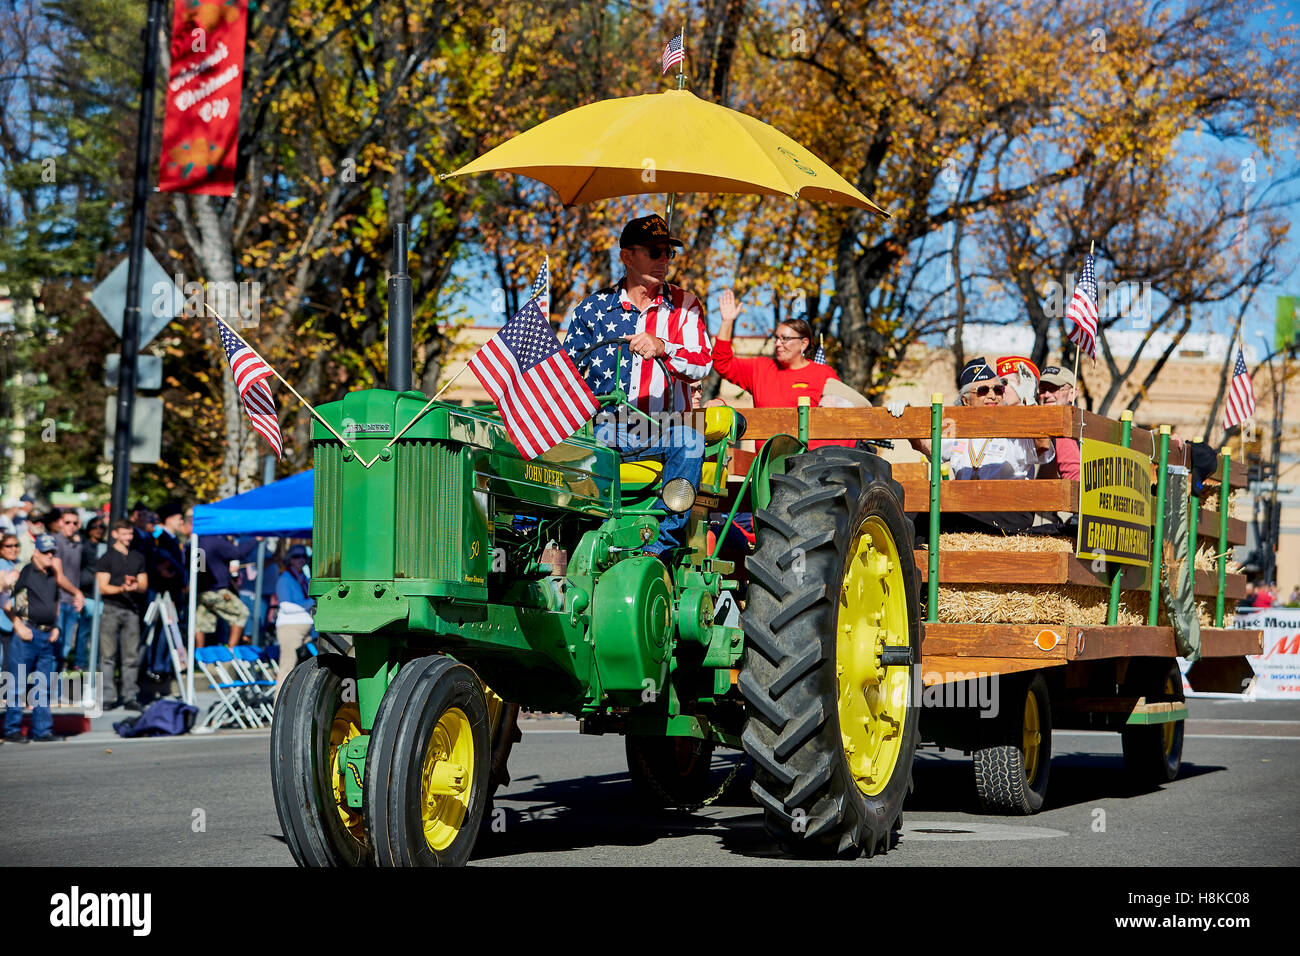 Prescott, AZ, USA - November 10, 2016: Vintage John Deere farm tractor and hay wagon at the Veterans Day Parade in Prescott, Arizona, USA. Stock Photo